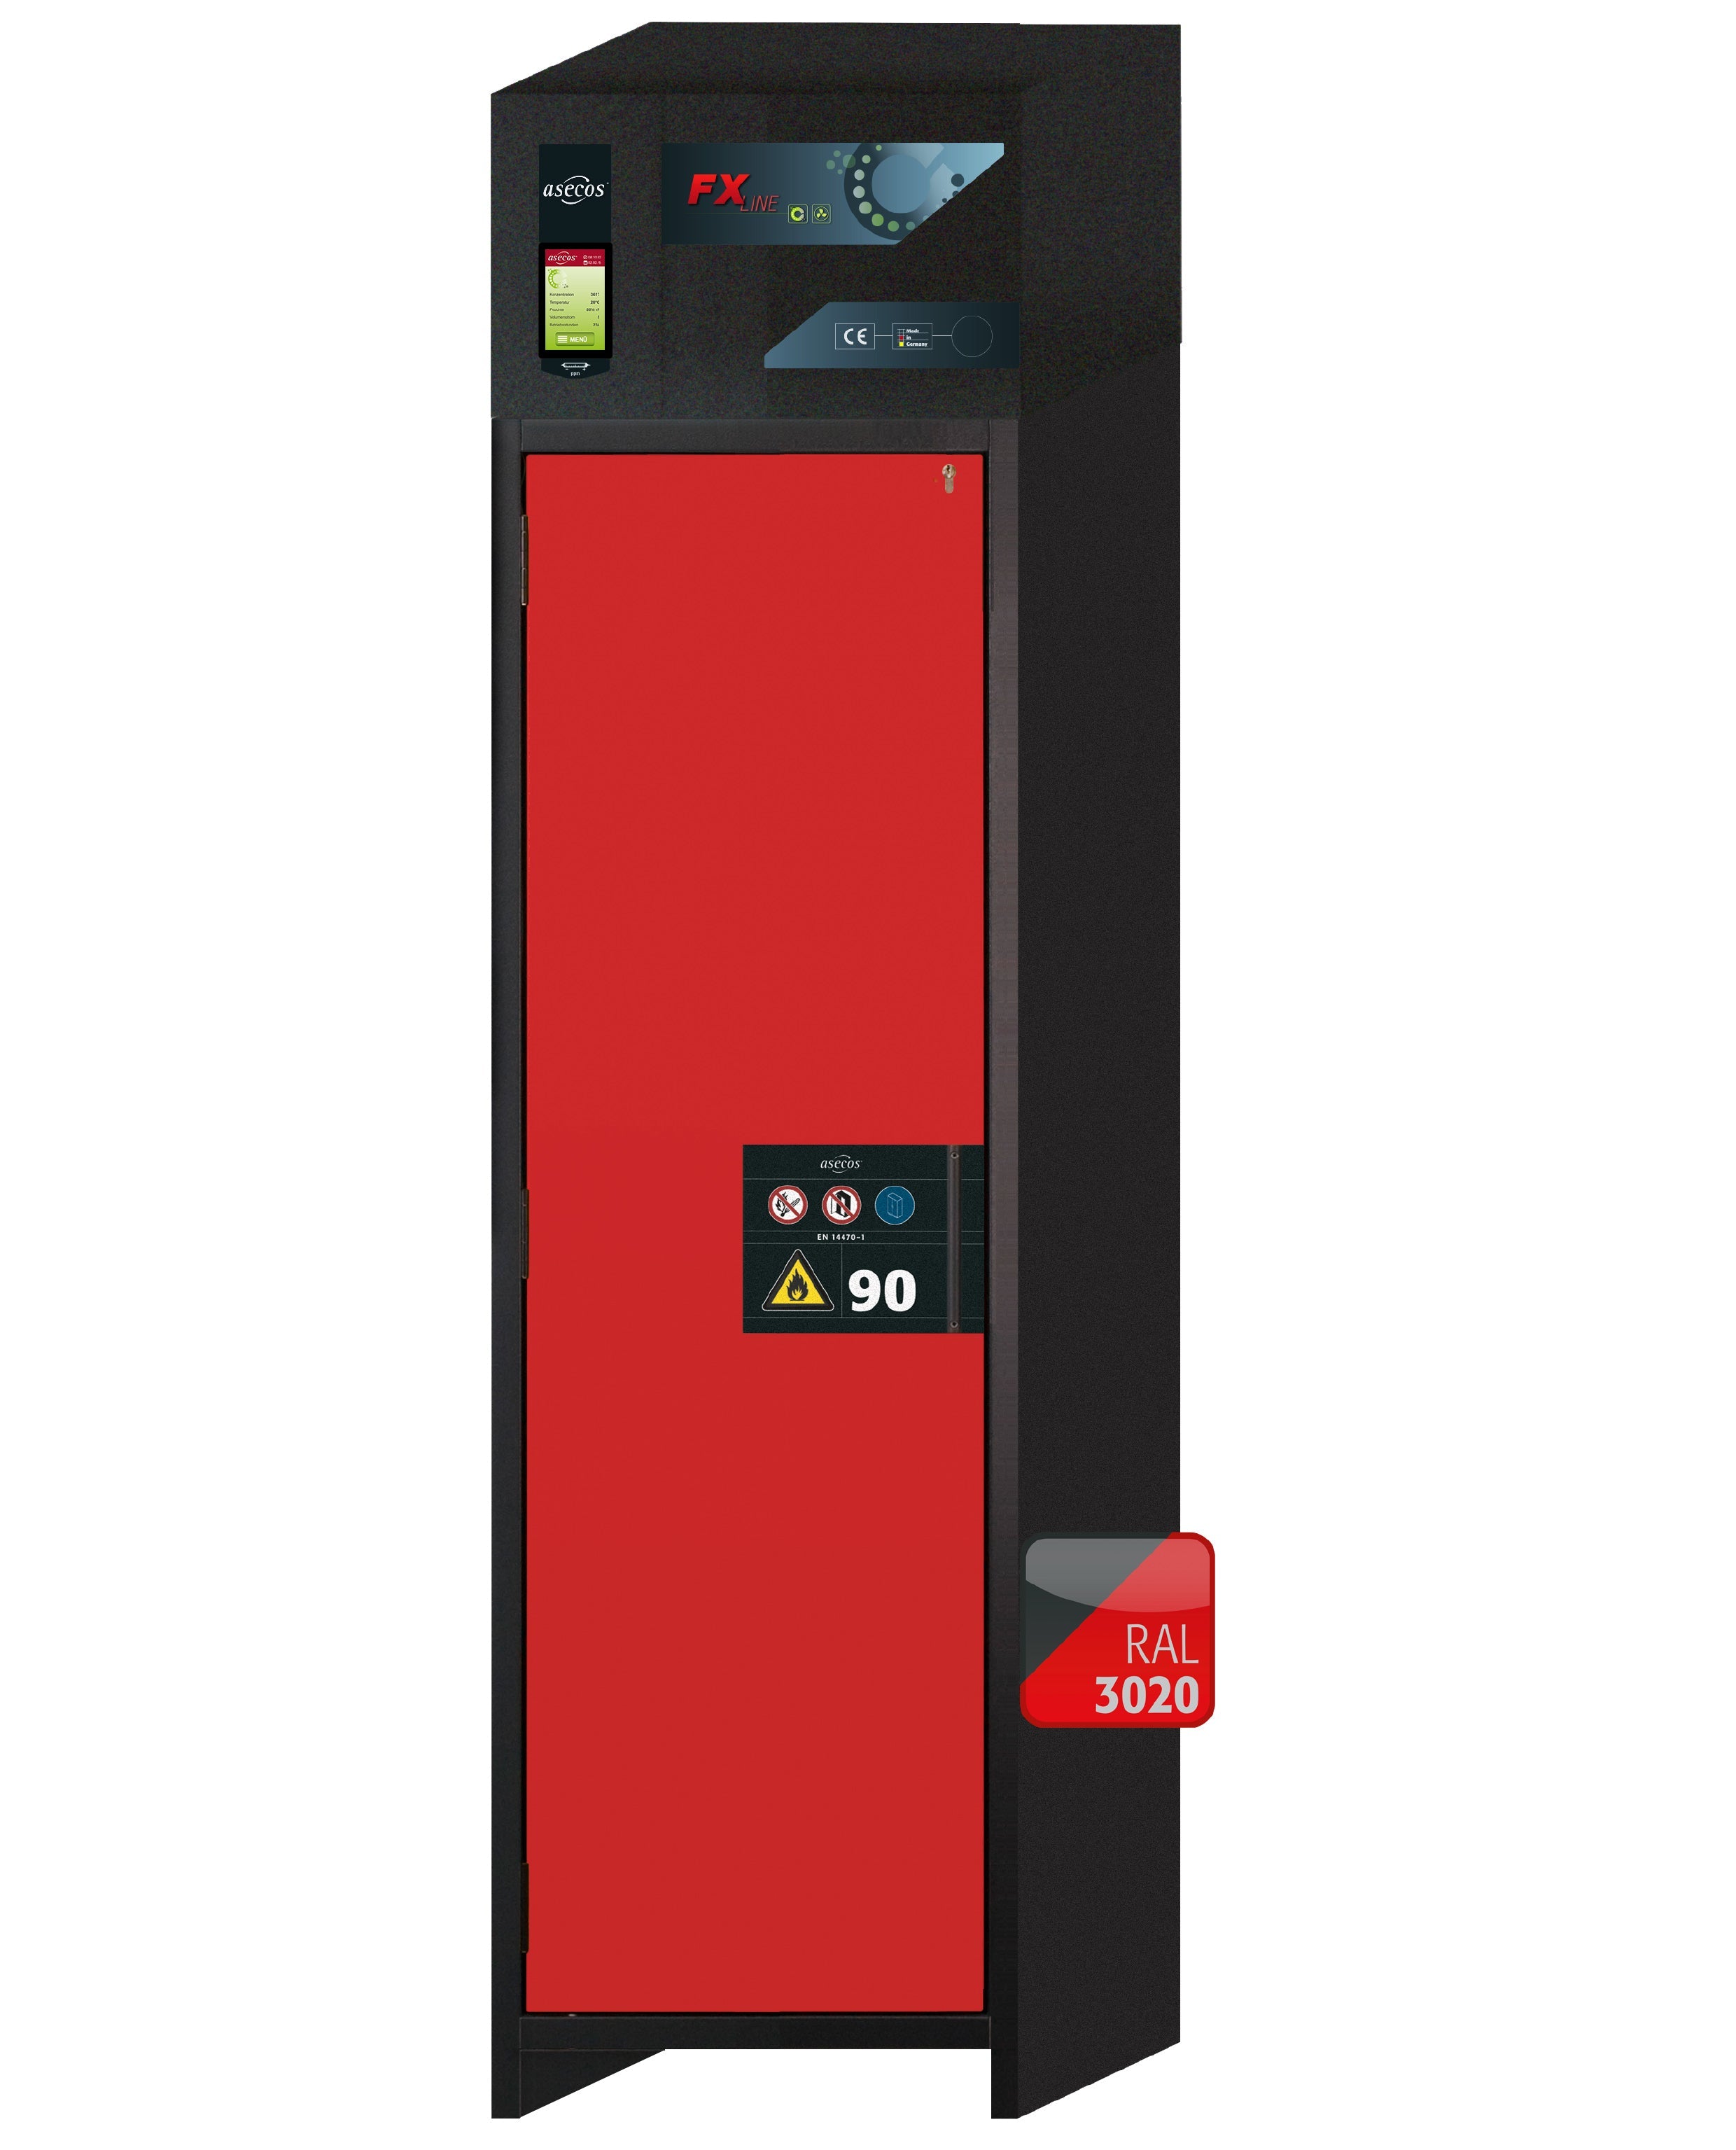 Armoire de filtration d'air de recirculation de type 90 FX-PEGASUS-90 modèle FX90.229.060.WDAC en rouge signalisation RAL 3020 avec 4x pieds de plateau standard (polypropylène)